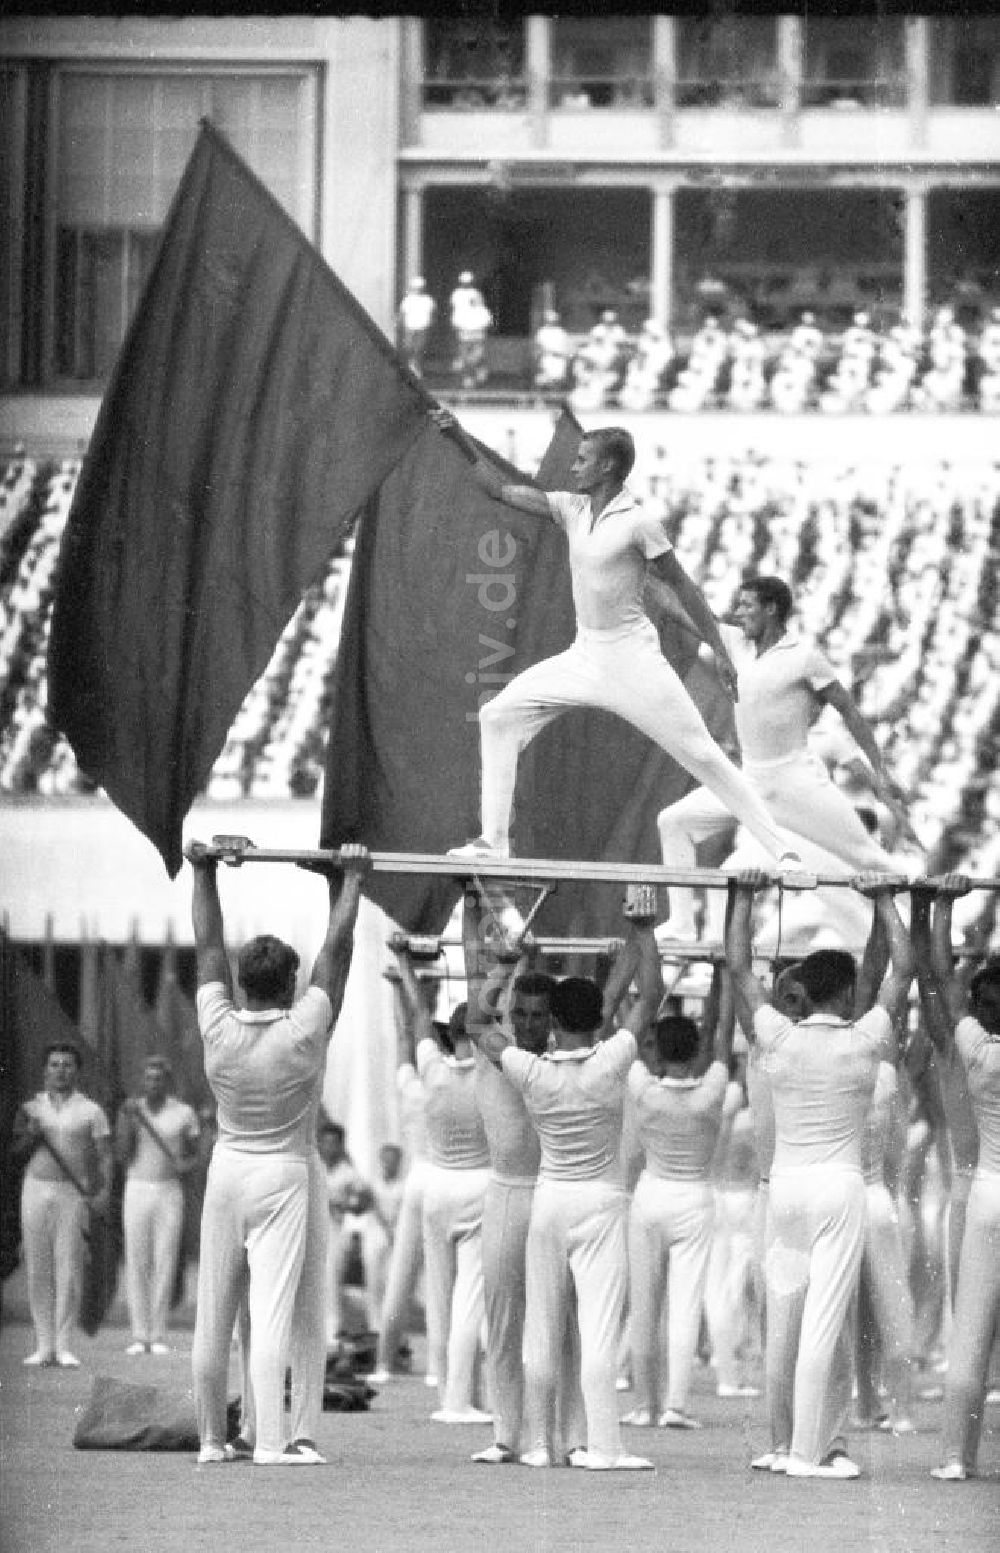 DDR-Bildarchiv: Leipzig - Sportler präsentieren sich mit einer Fahne auf dem Turnfest, Leipzig 1963